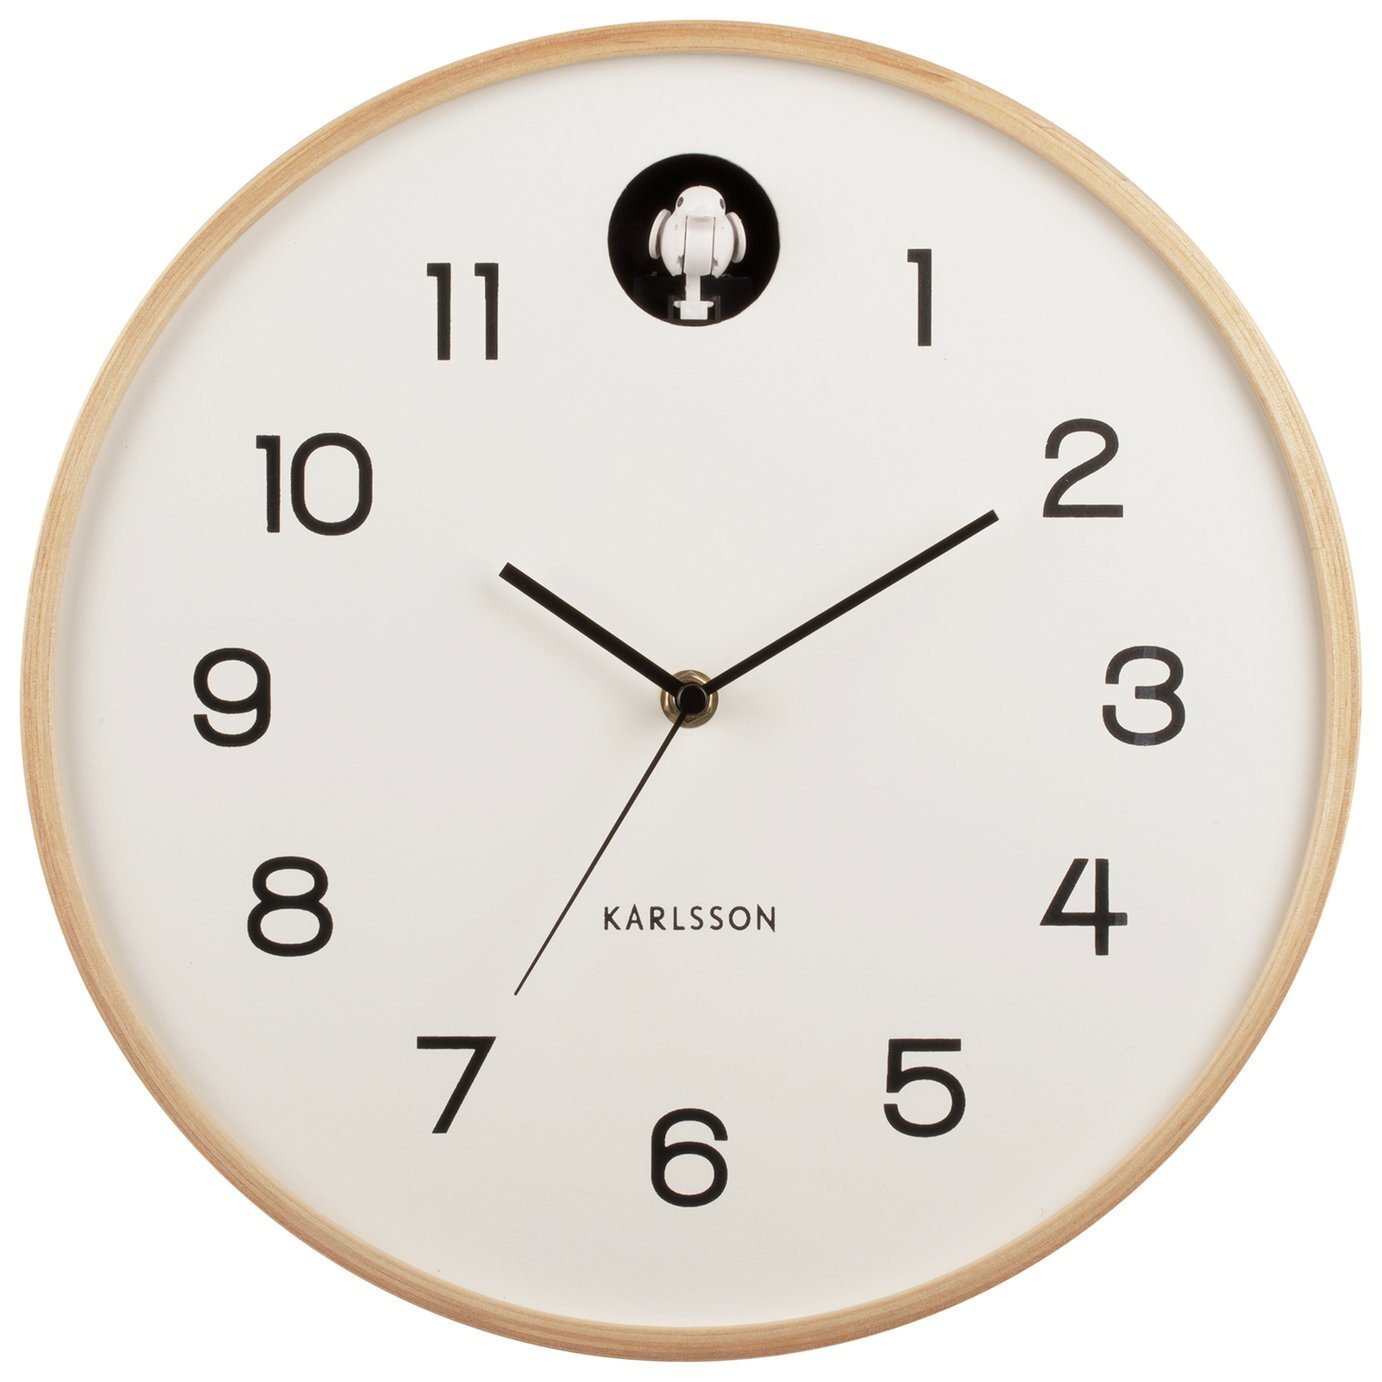 Karlsson Natural Cuckoo Analogue Wall Clock - Birch White - image 1